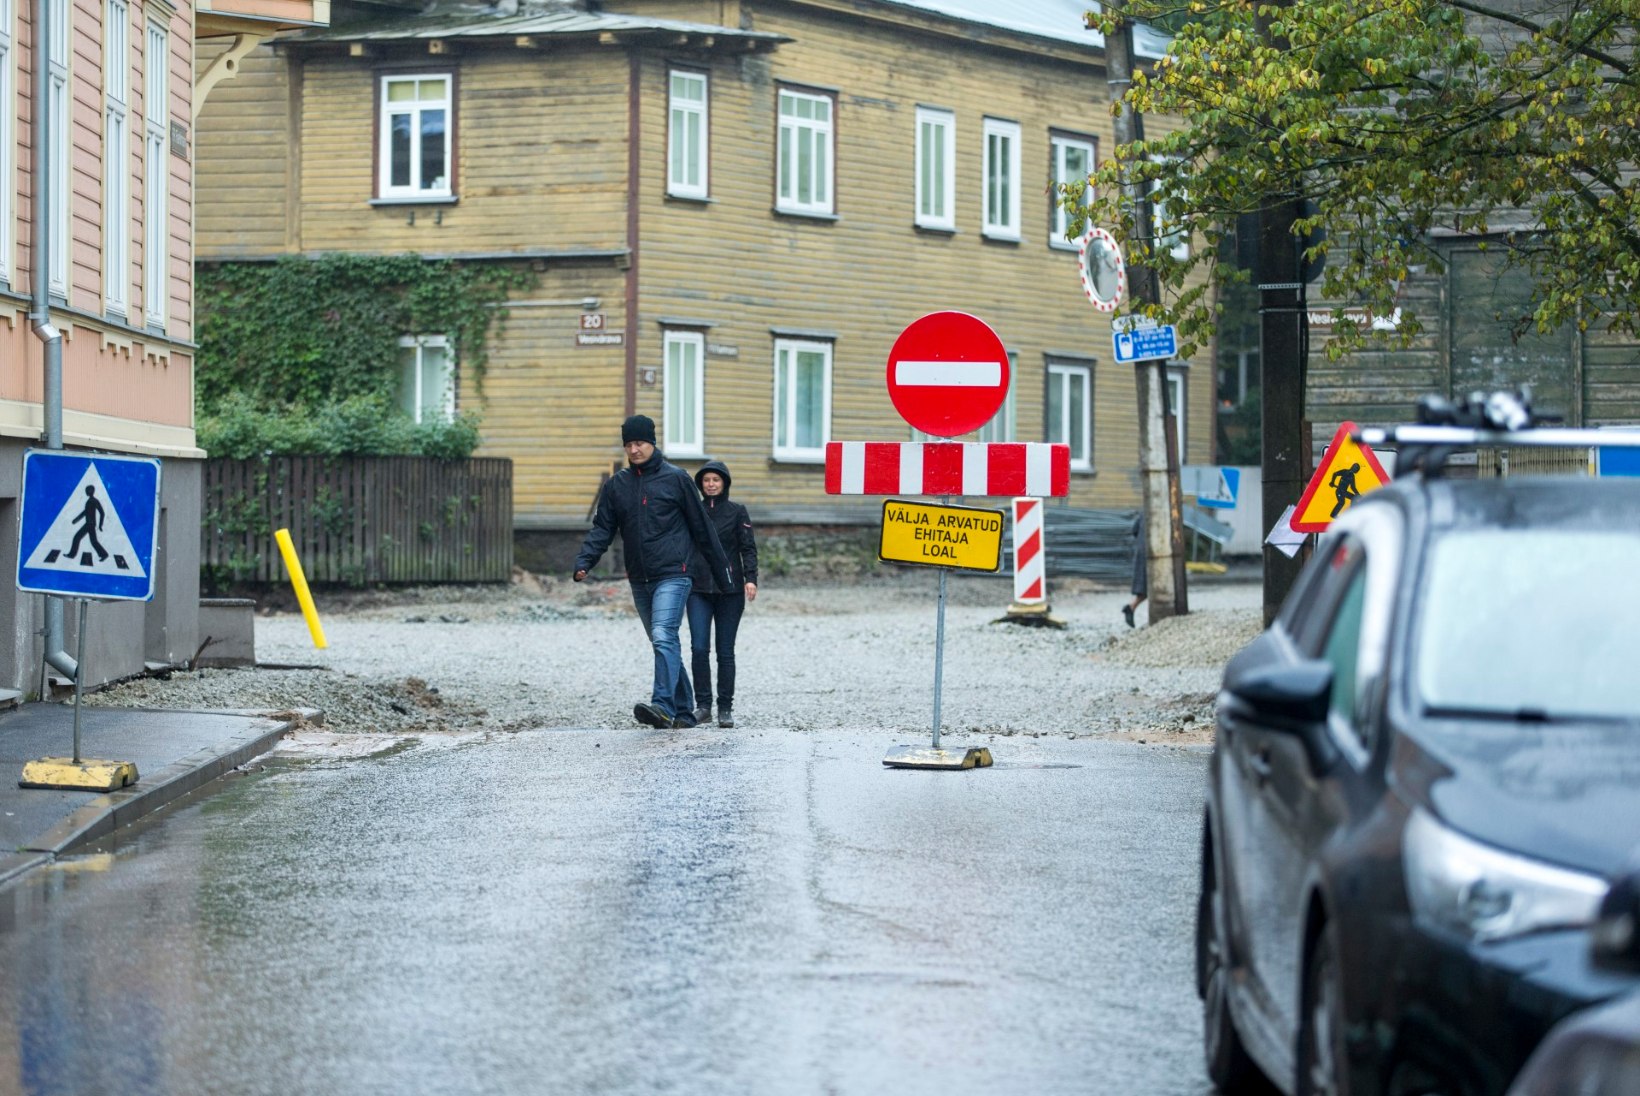 KAS SA JÄID KA LÕKSU? Suhtlusvõrgustikus kirutakse üksteise võidu Tallinna jooksu kehva liikluskorraldust